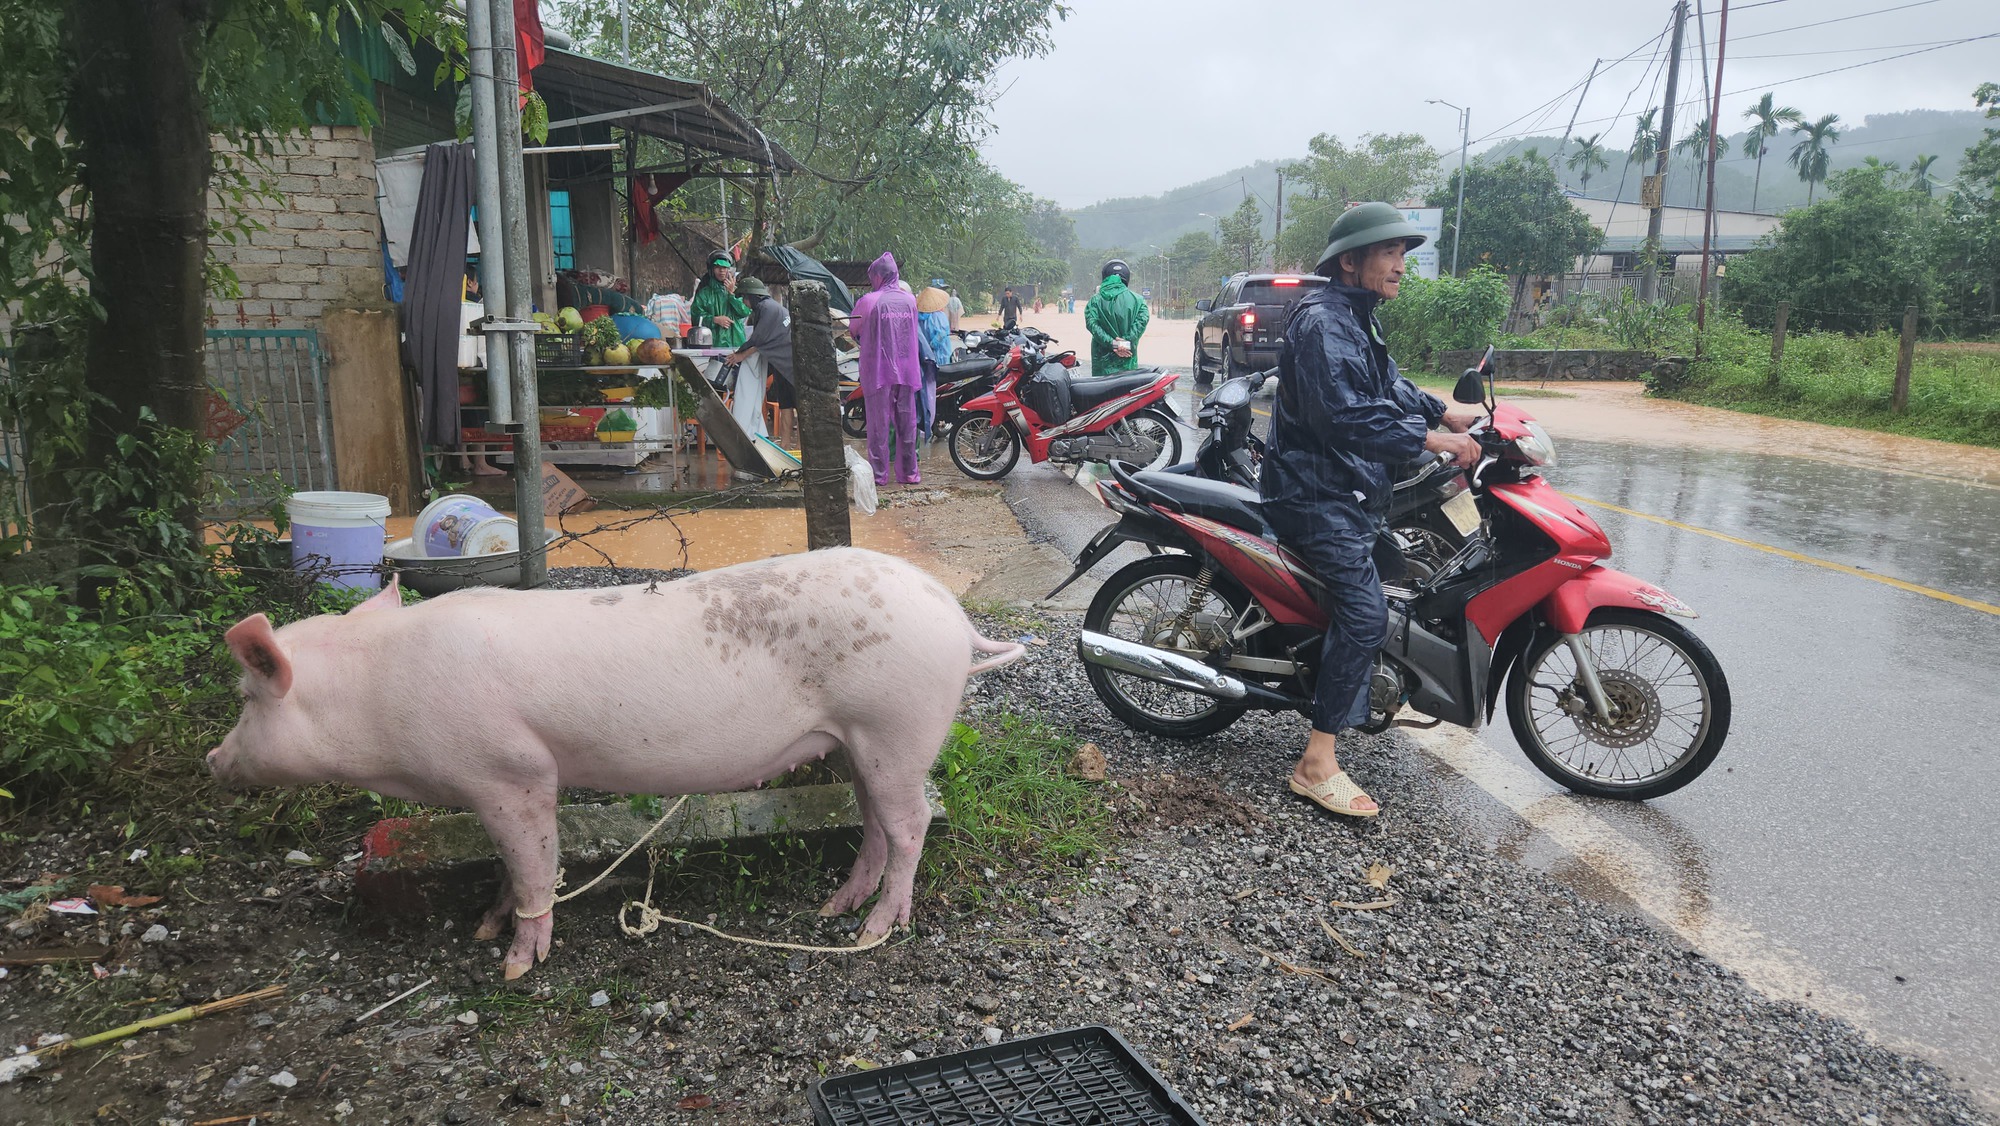 Hà Tĩnh: Quốc lộ 15 A biến 'thành sông' do mưa lớn, nhiều nhà dân ngập sâu - Ảnh 6.